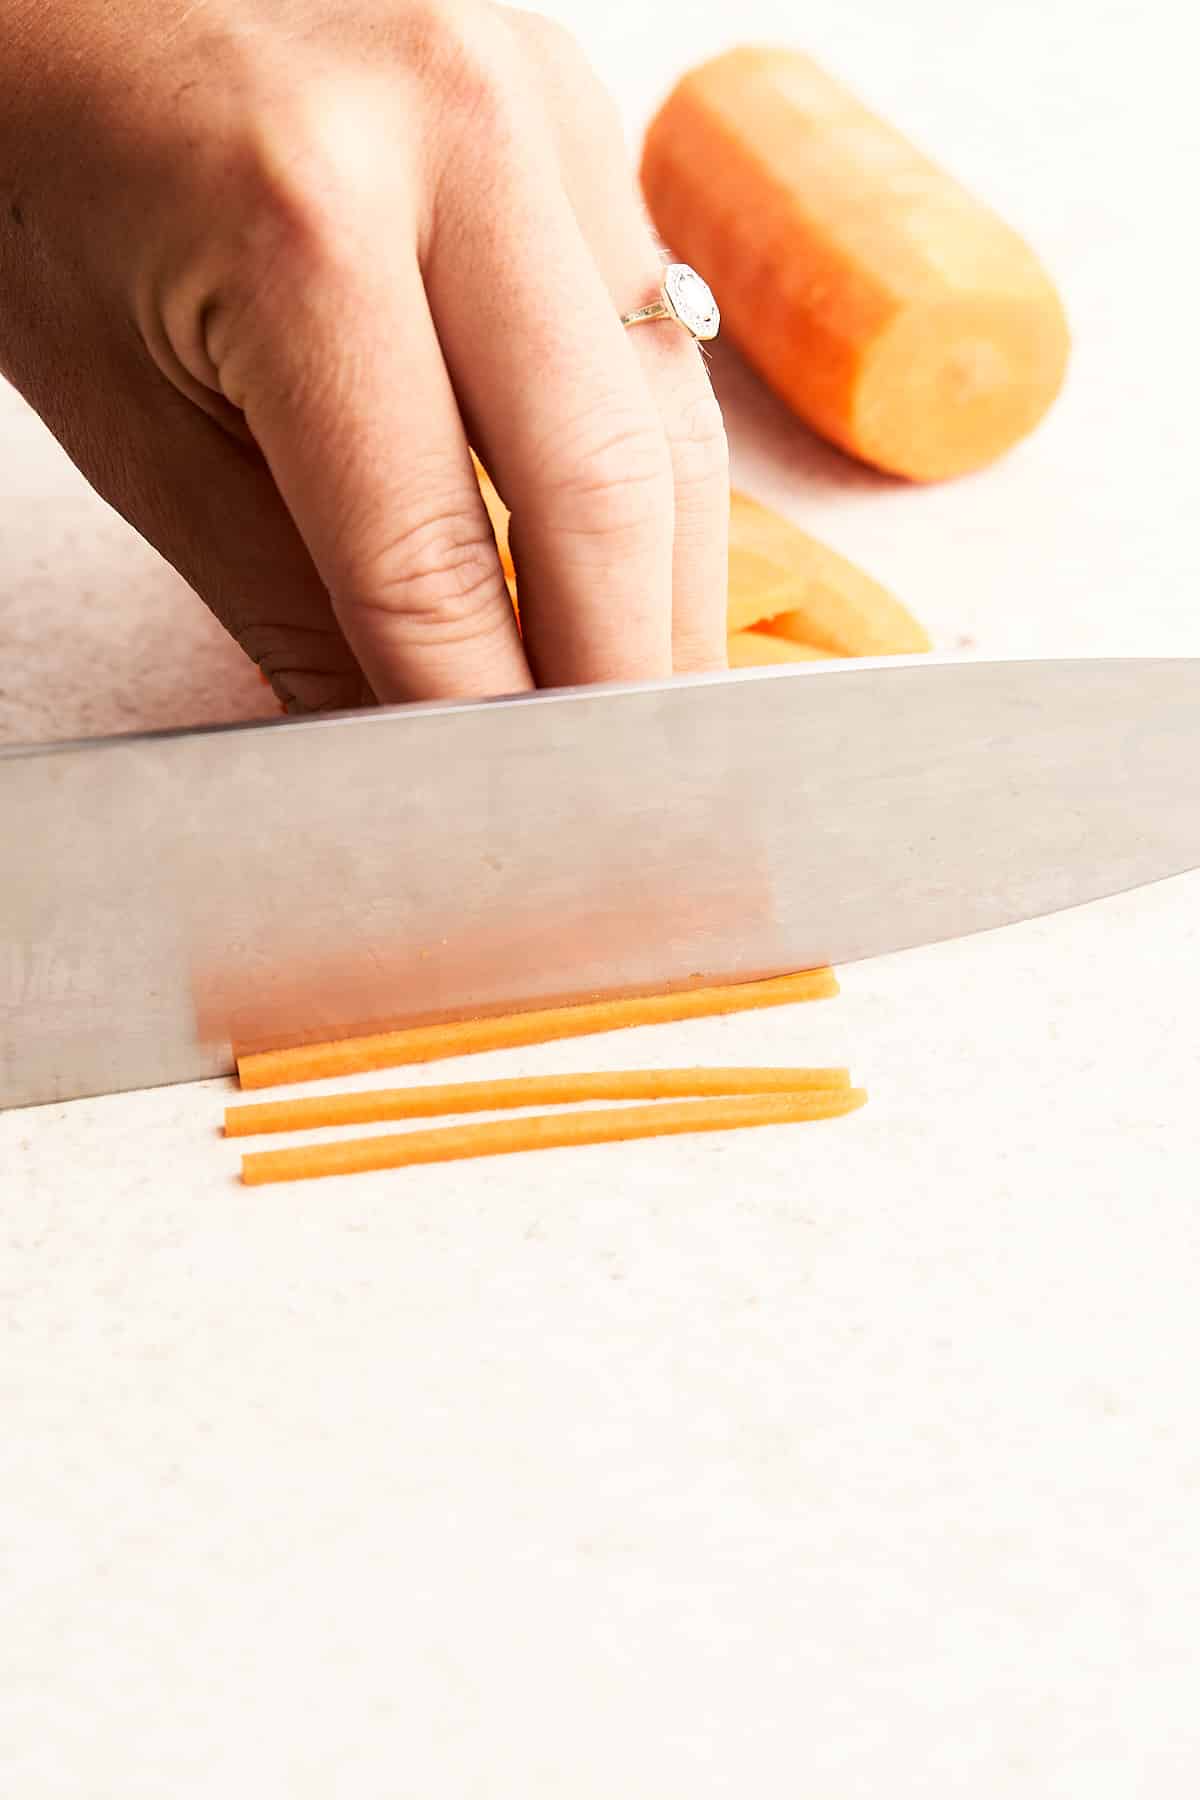 Cutting a carrot into matchsticks.